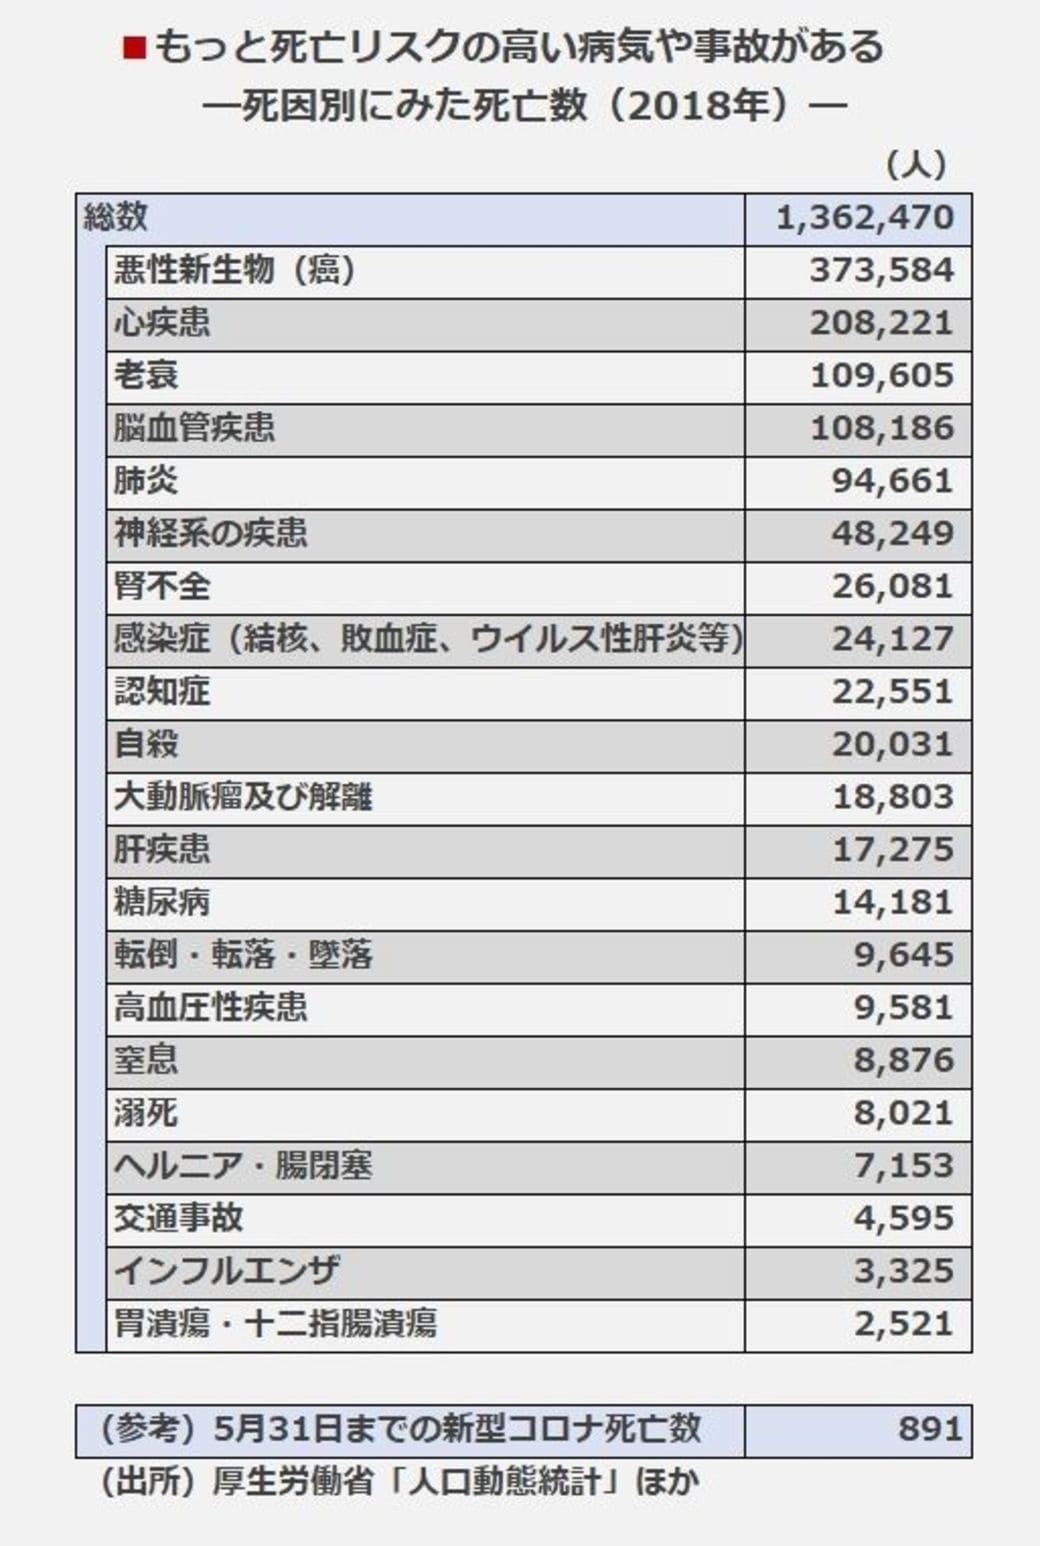 日本 数 インフルエンザ 死者 令和1年度：インフルエンザとその他の感染症の死亡者数の累計とは？